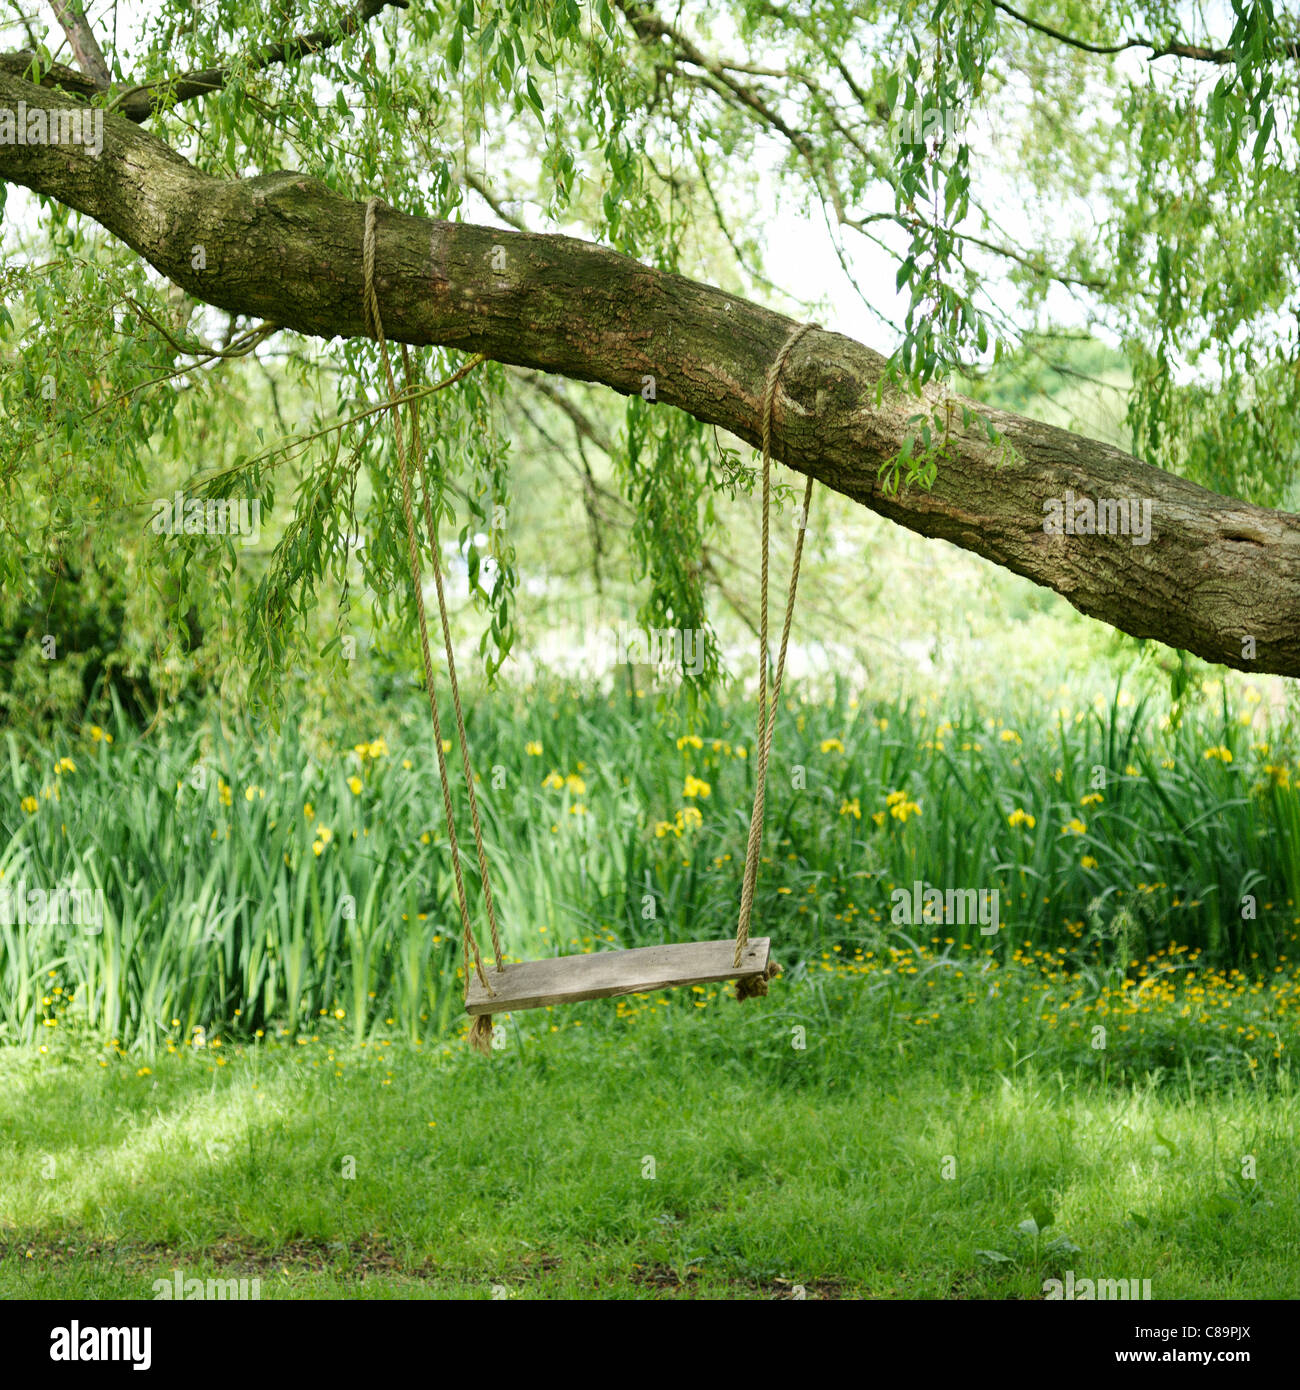 Schaukel hängen von einem Baum in einem Garten Stockfoto